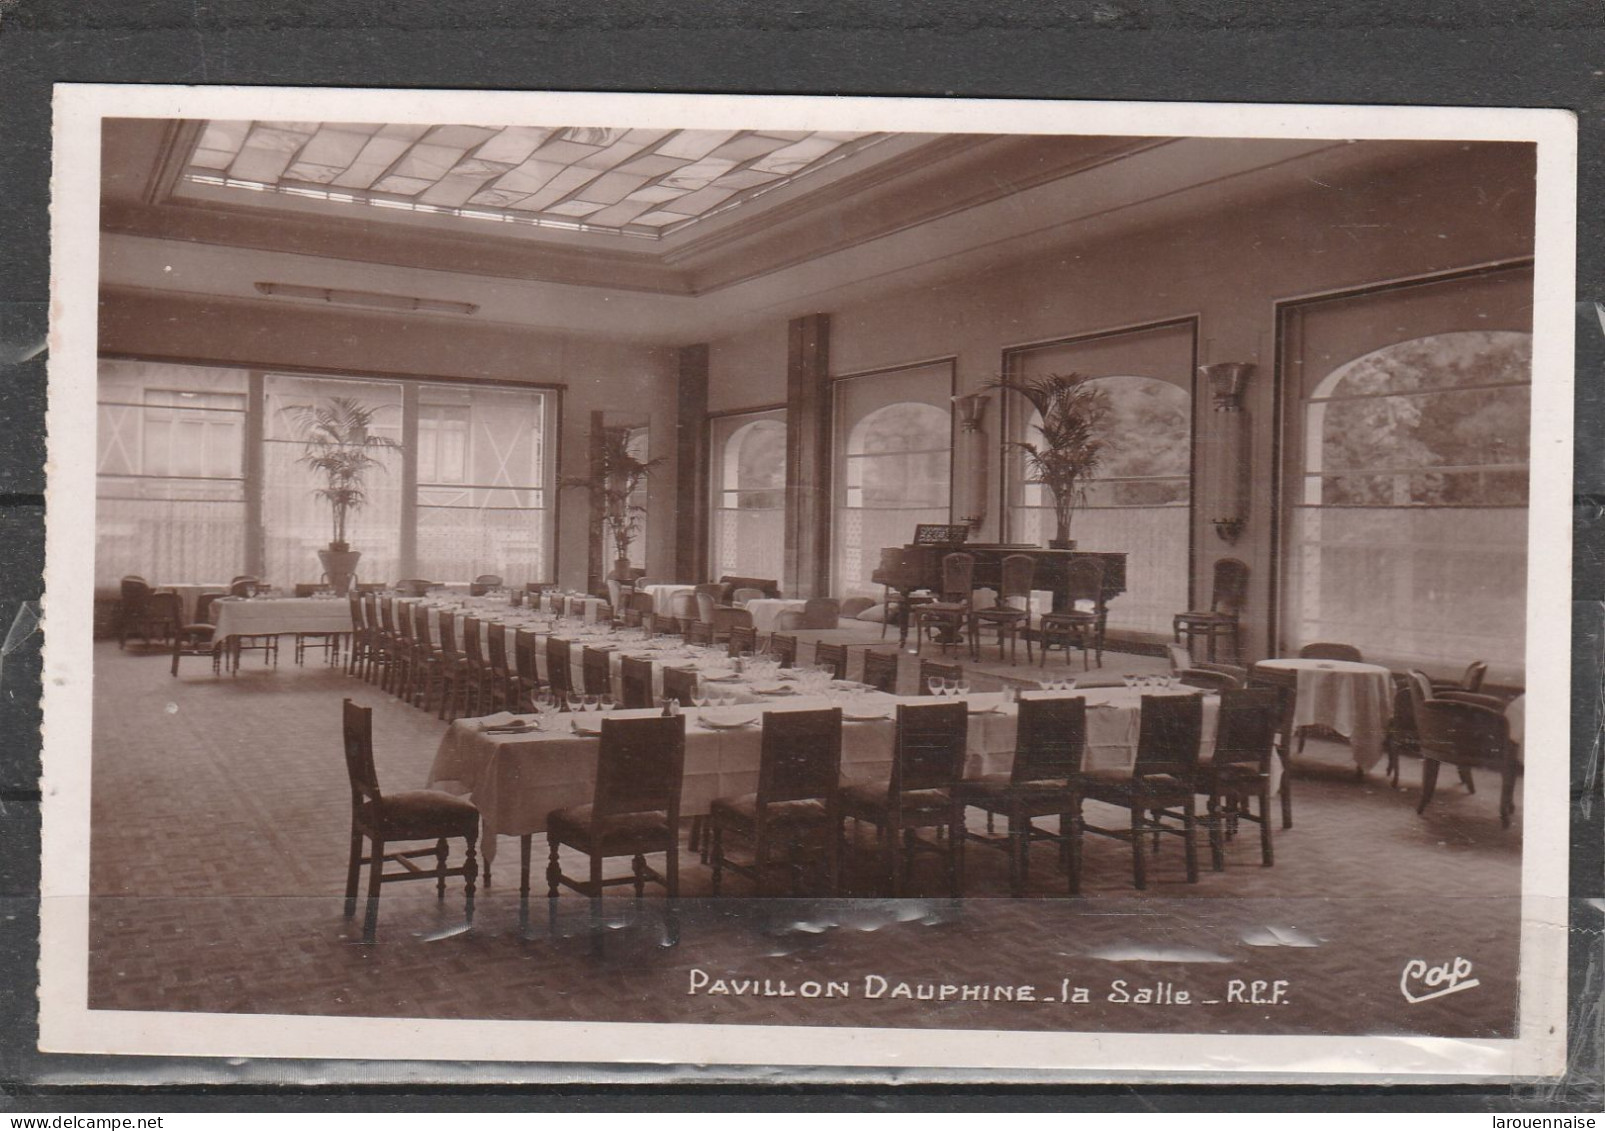 75016 - PARIS - Pavillon Dauphine - La Salle - R.C.F. - Cafés, Hotels, Restaurants